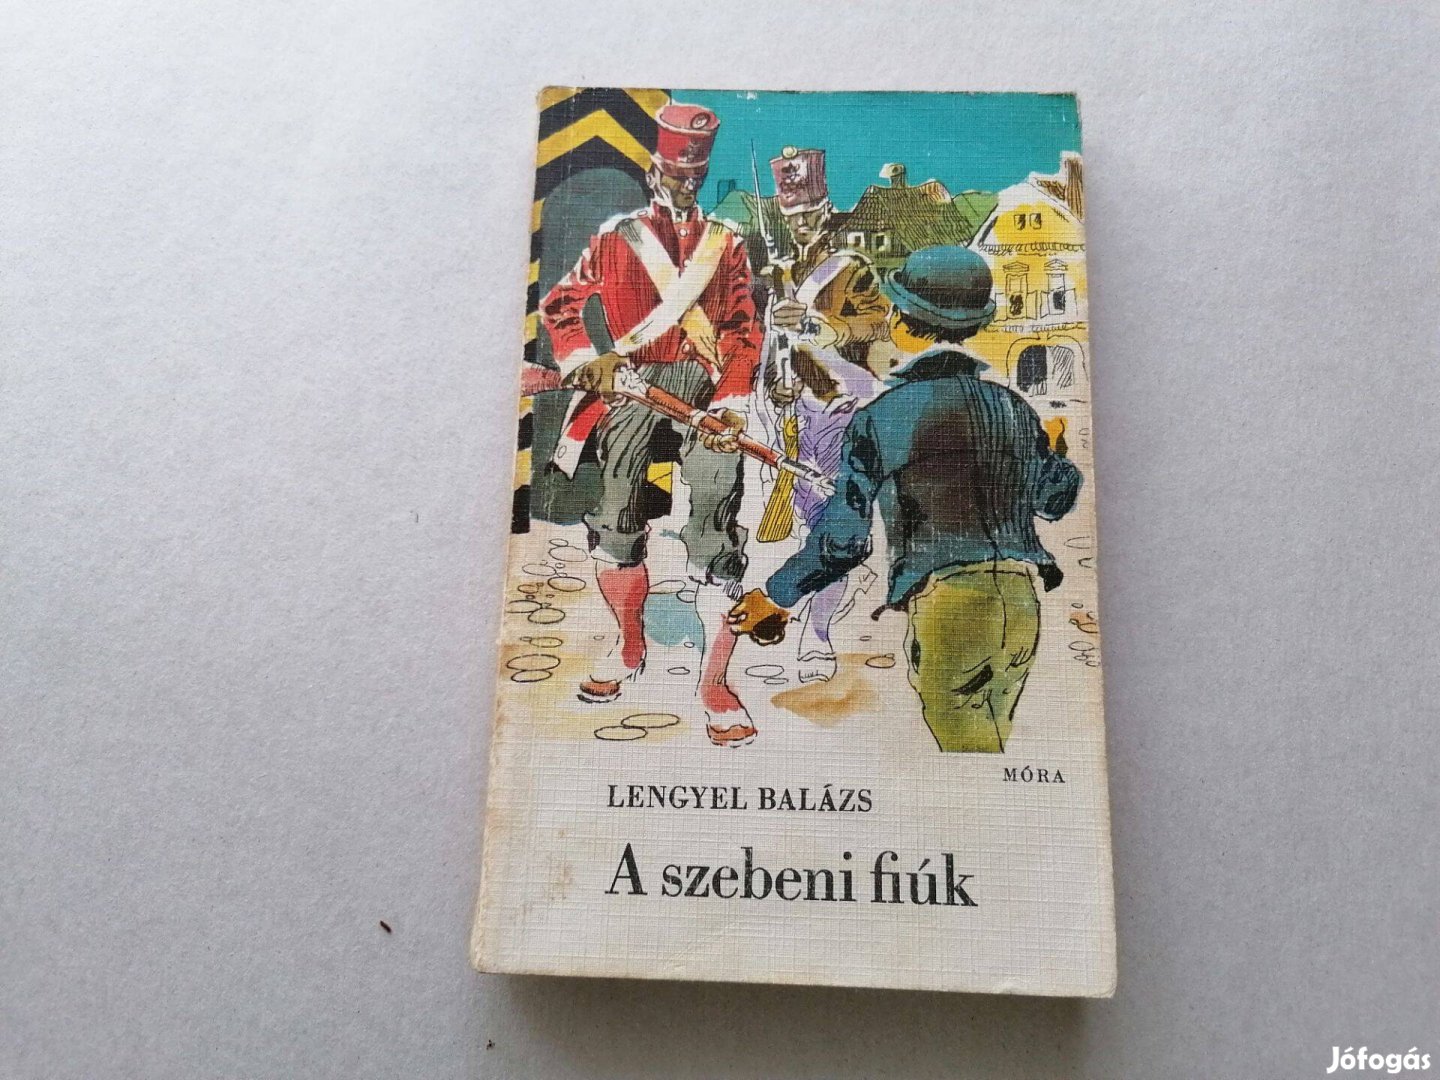 Lengyel Balázs:A szebeni fiúk c.könyv jó állapotban eladó!